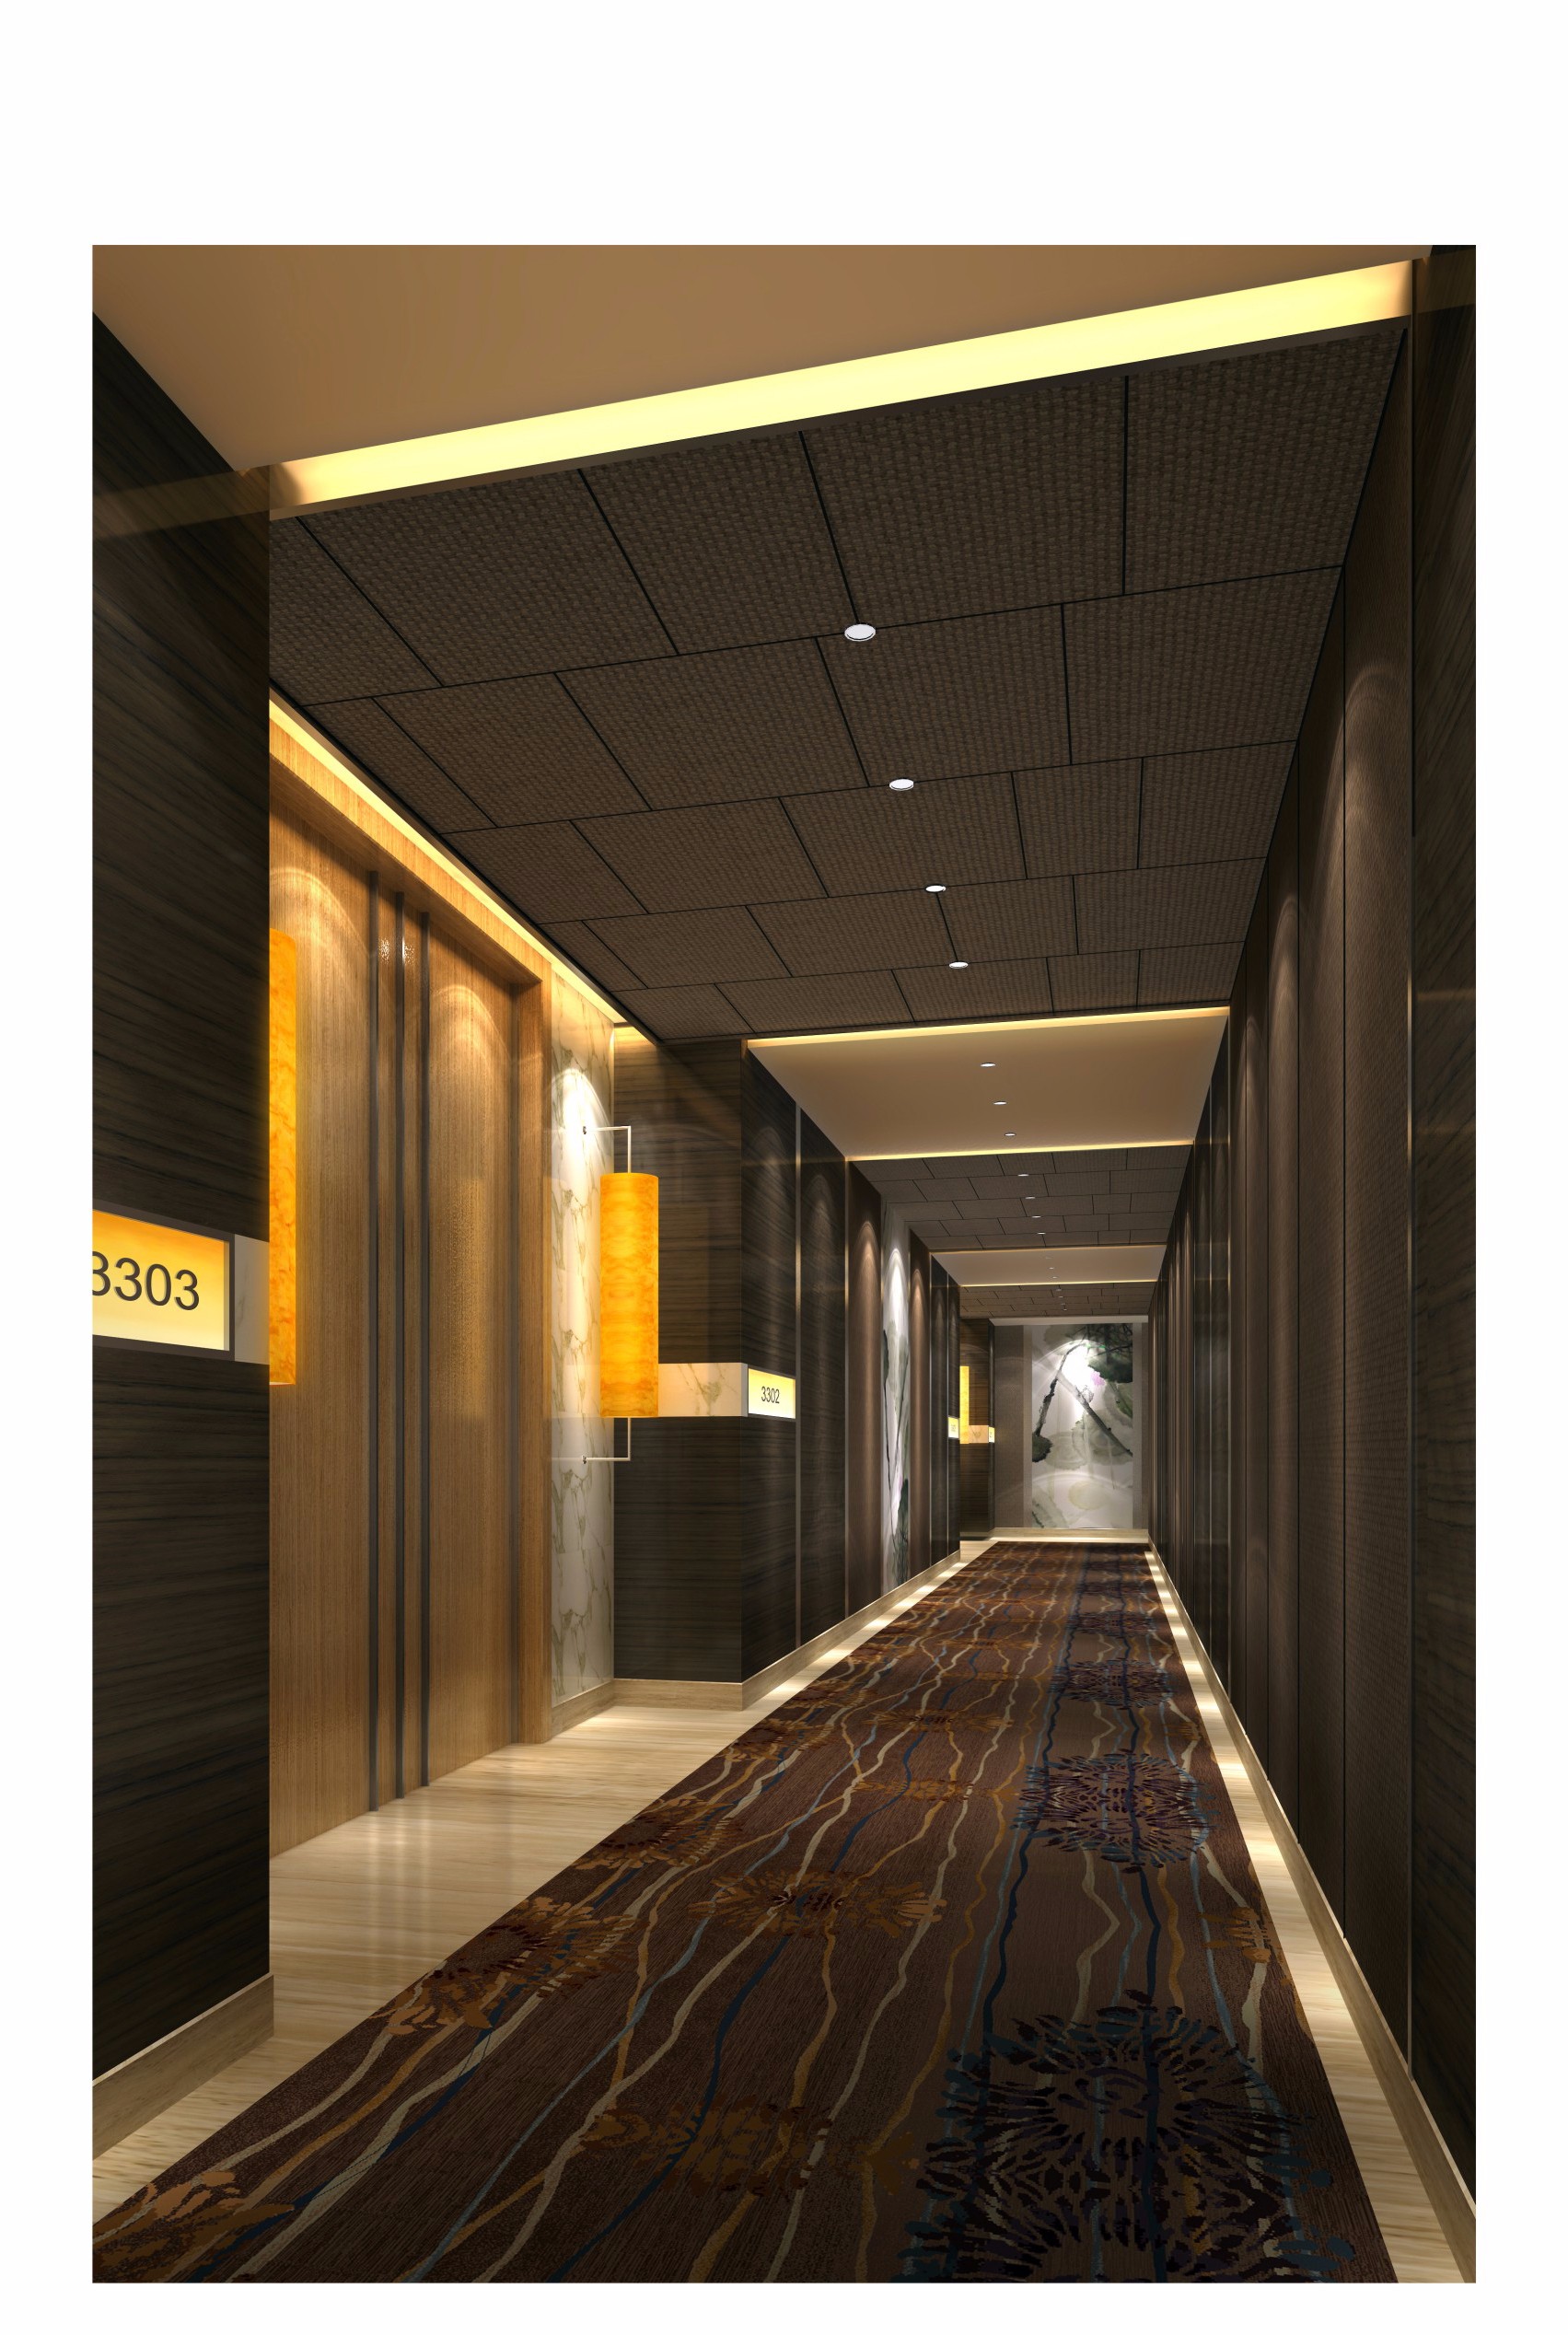 酒店过道效果图 - 效果图交流区-建E室内设计网